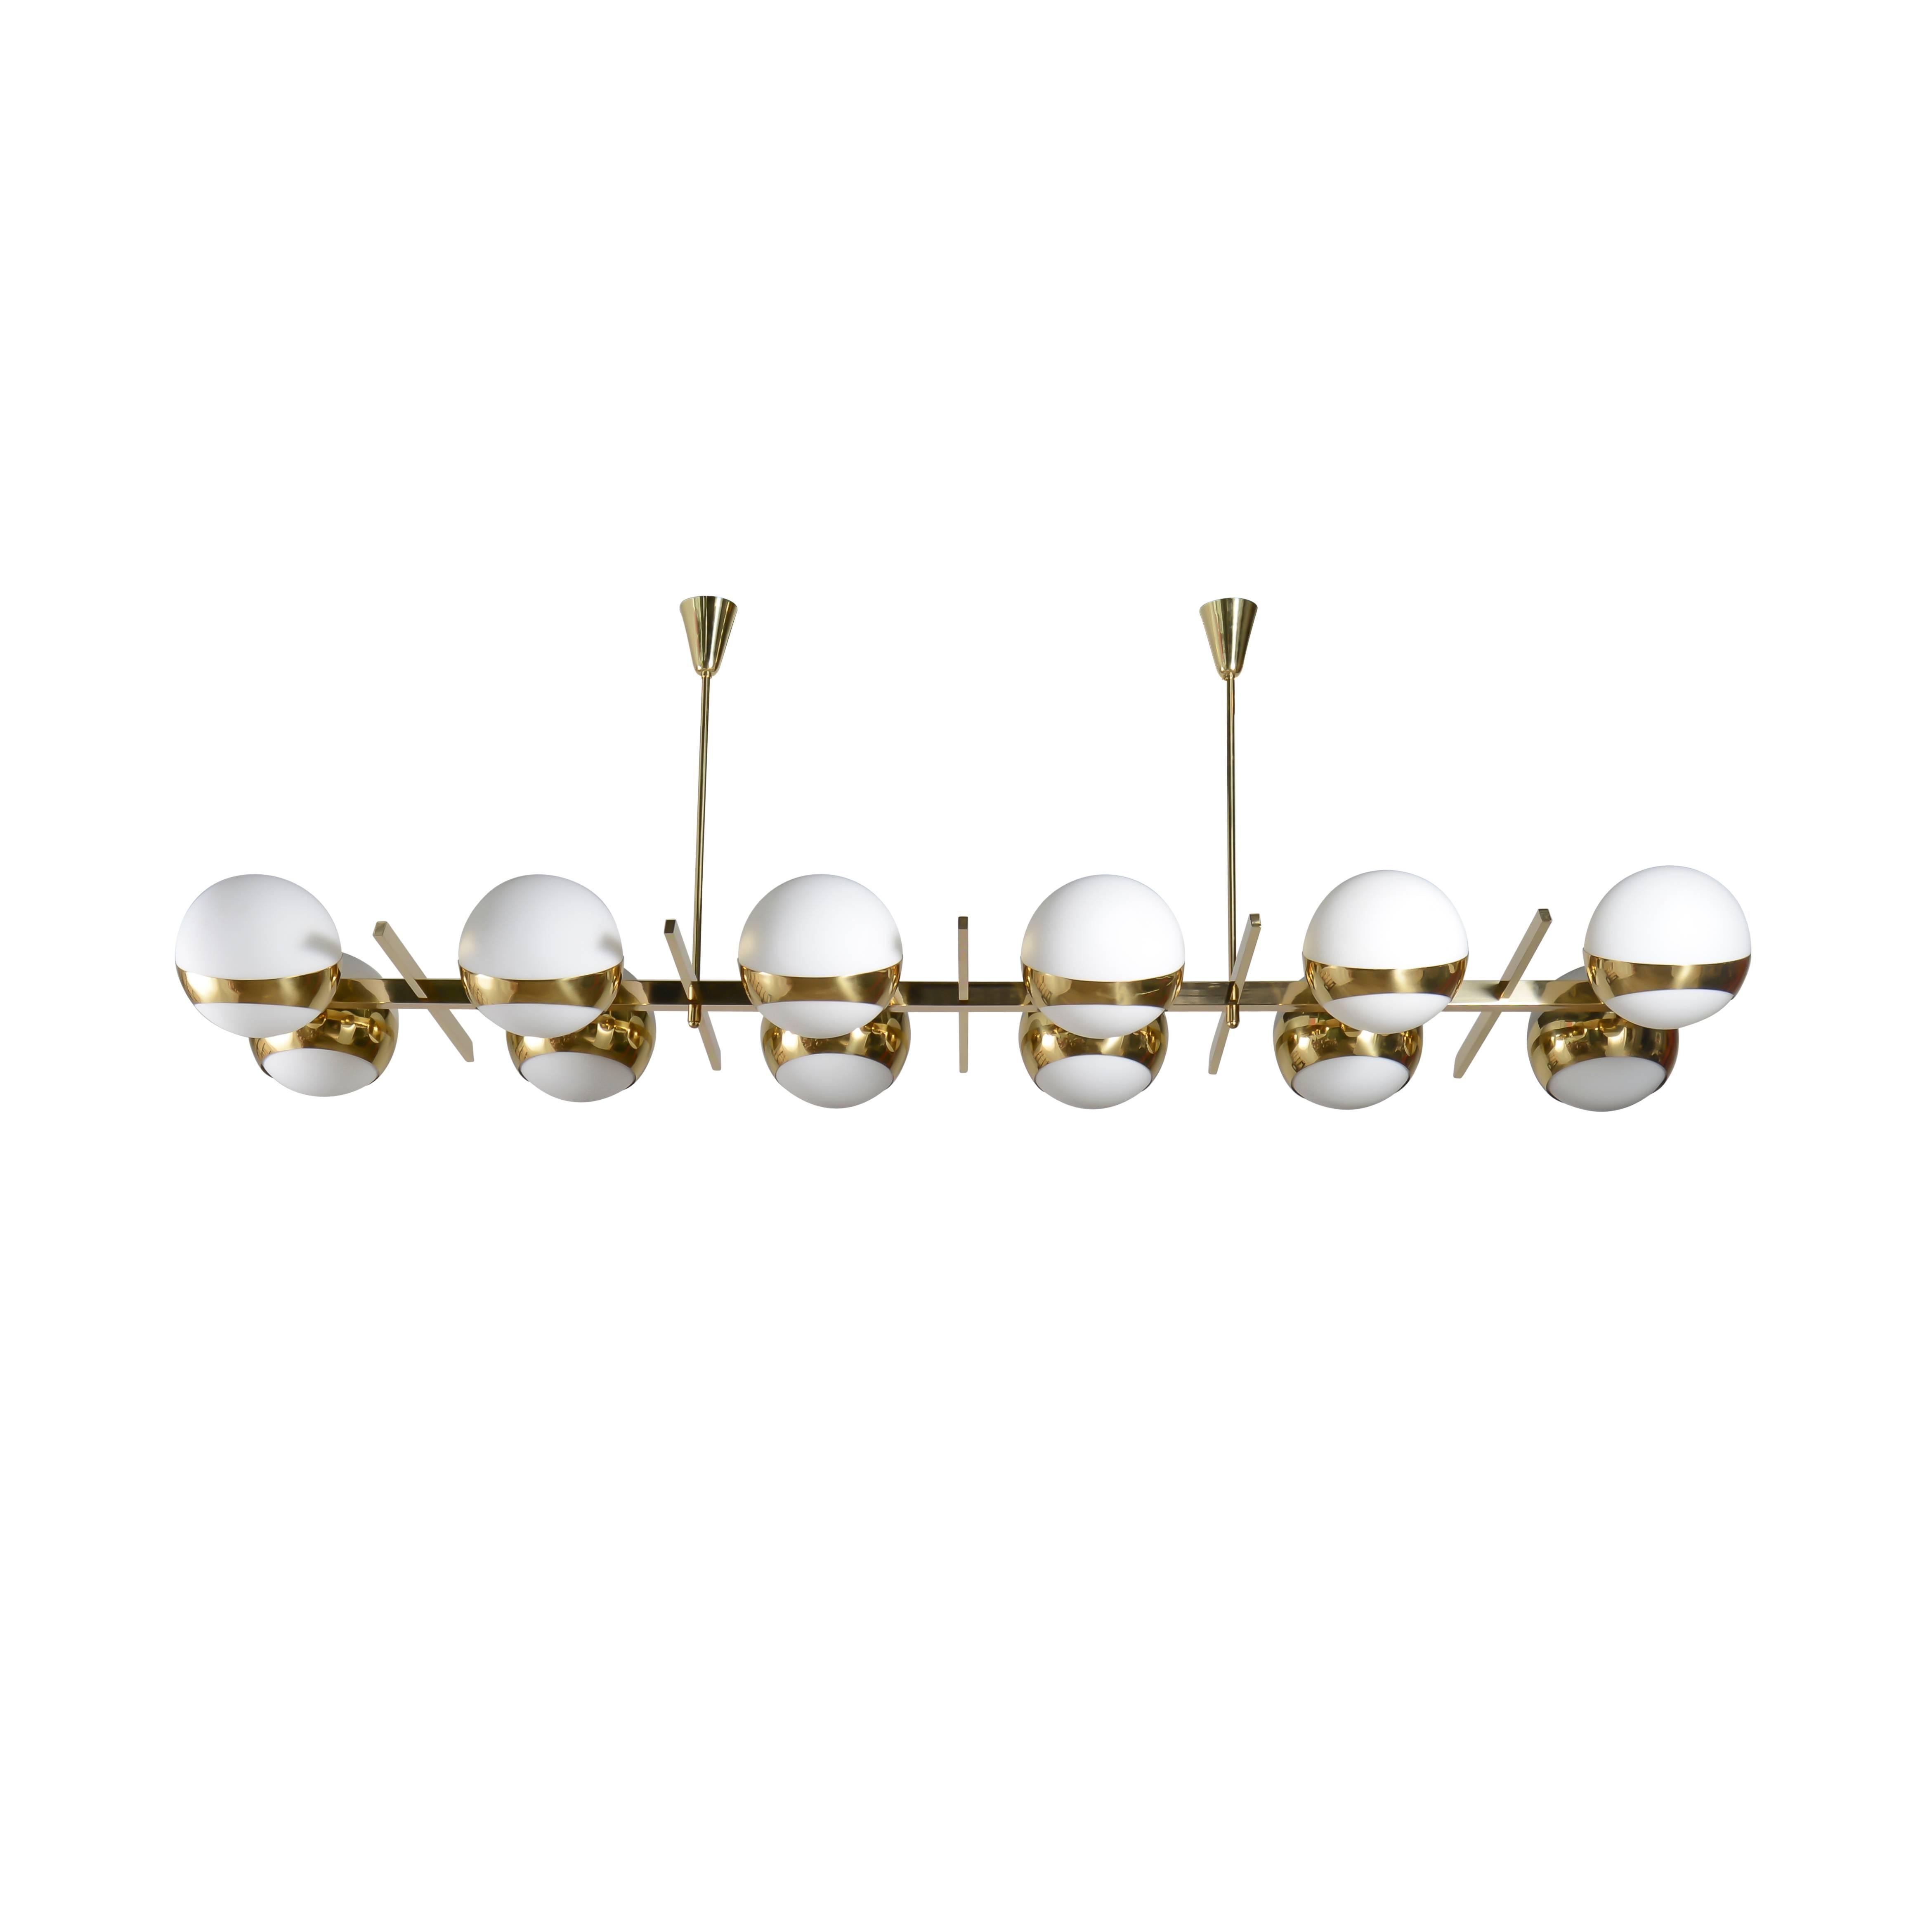 Rectangular brass chandelier with twelve 9